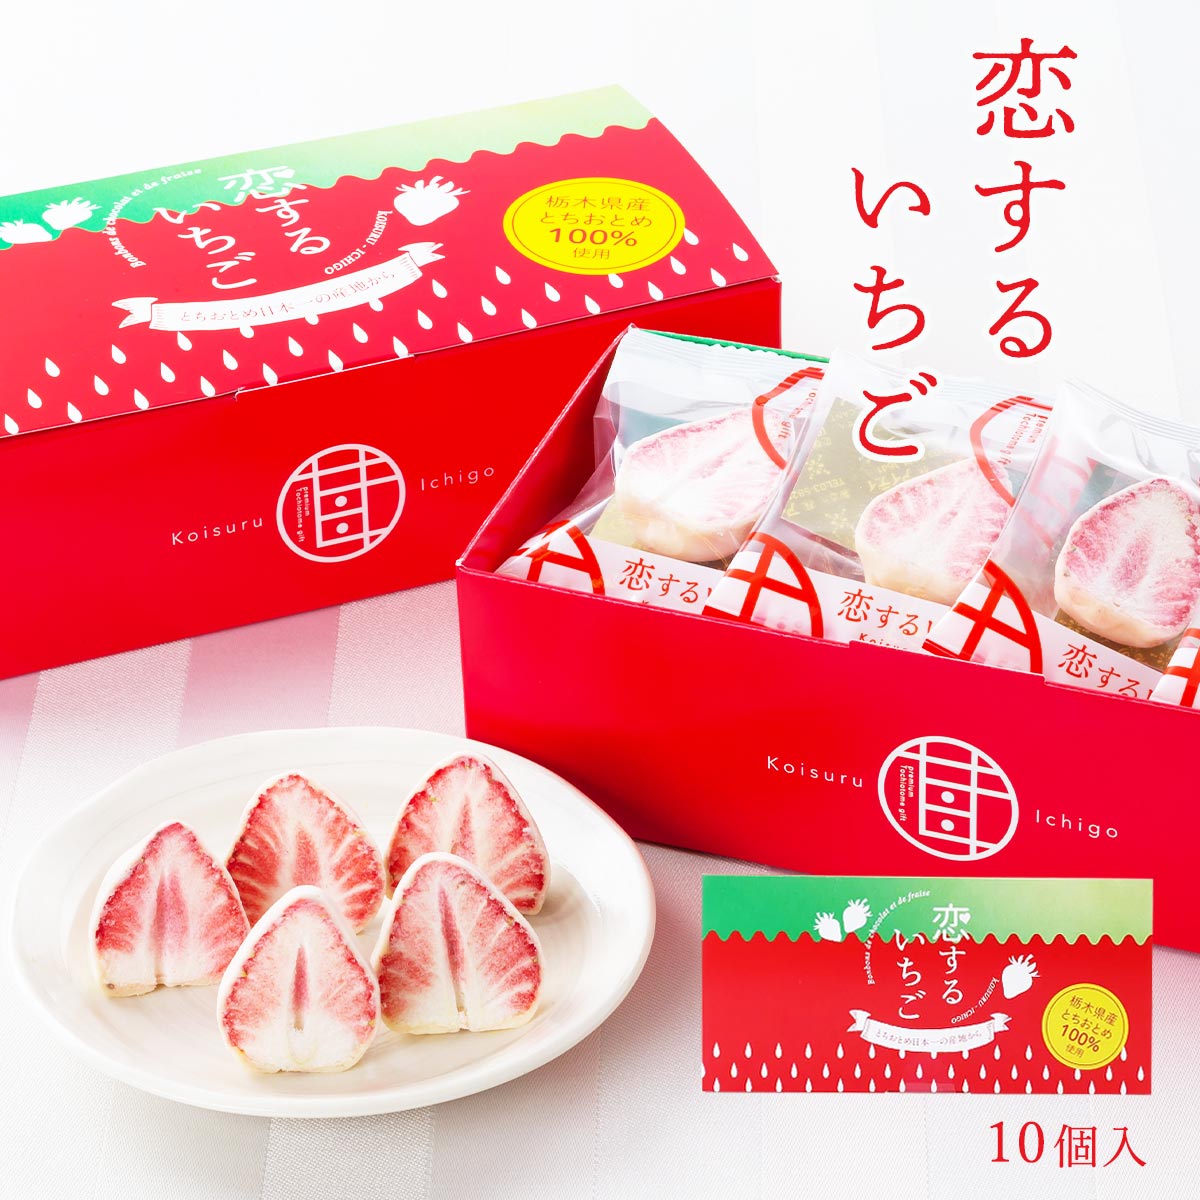 [静風] いちご菓子 恋するいちご 10個 赤箱入り いちご